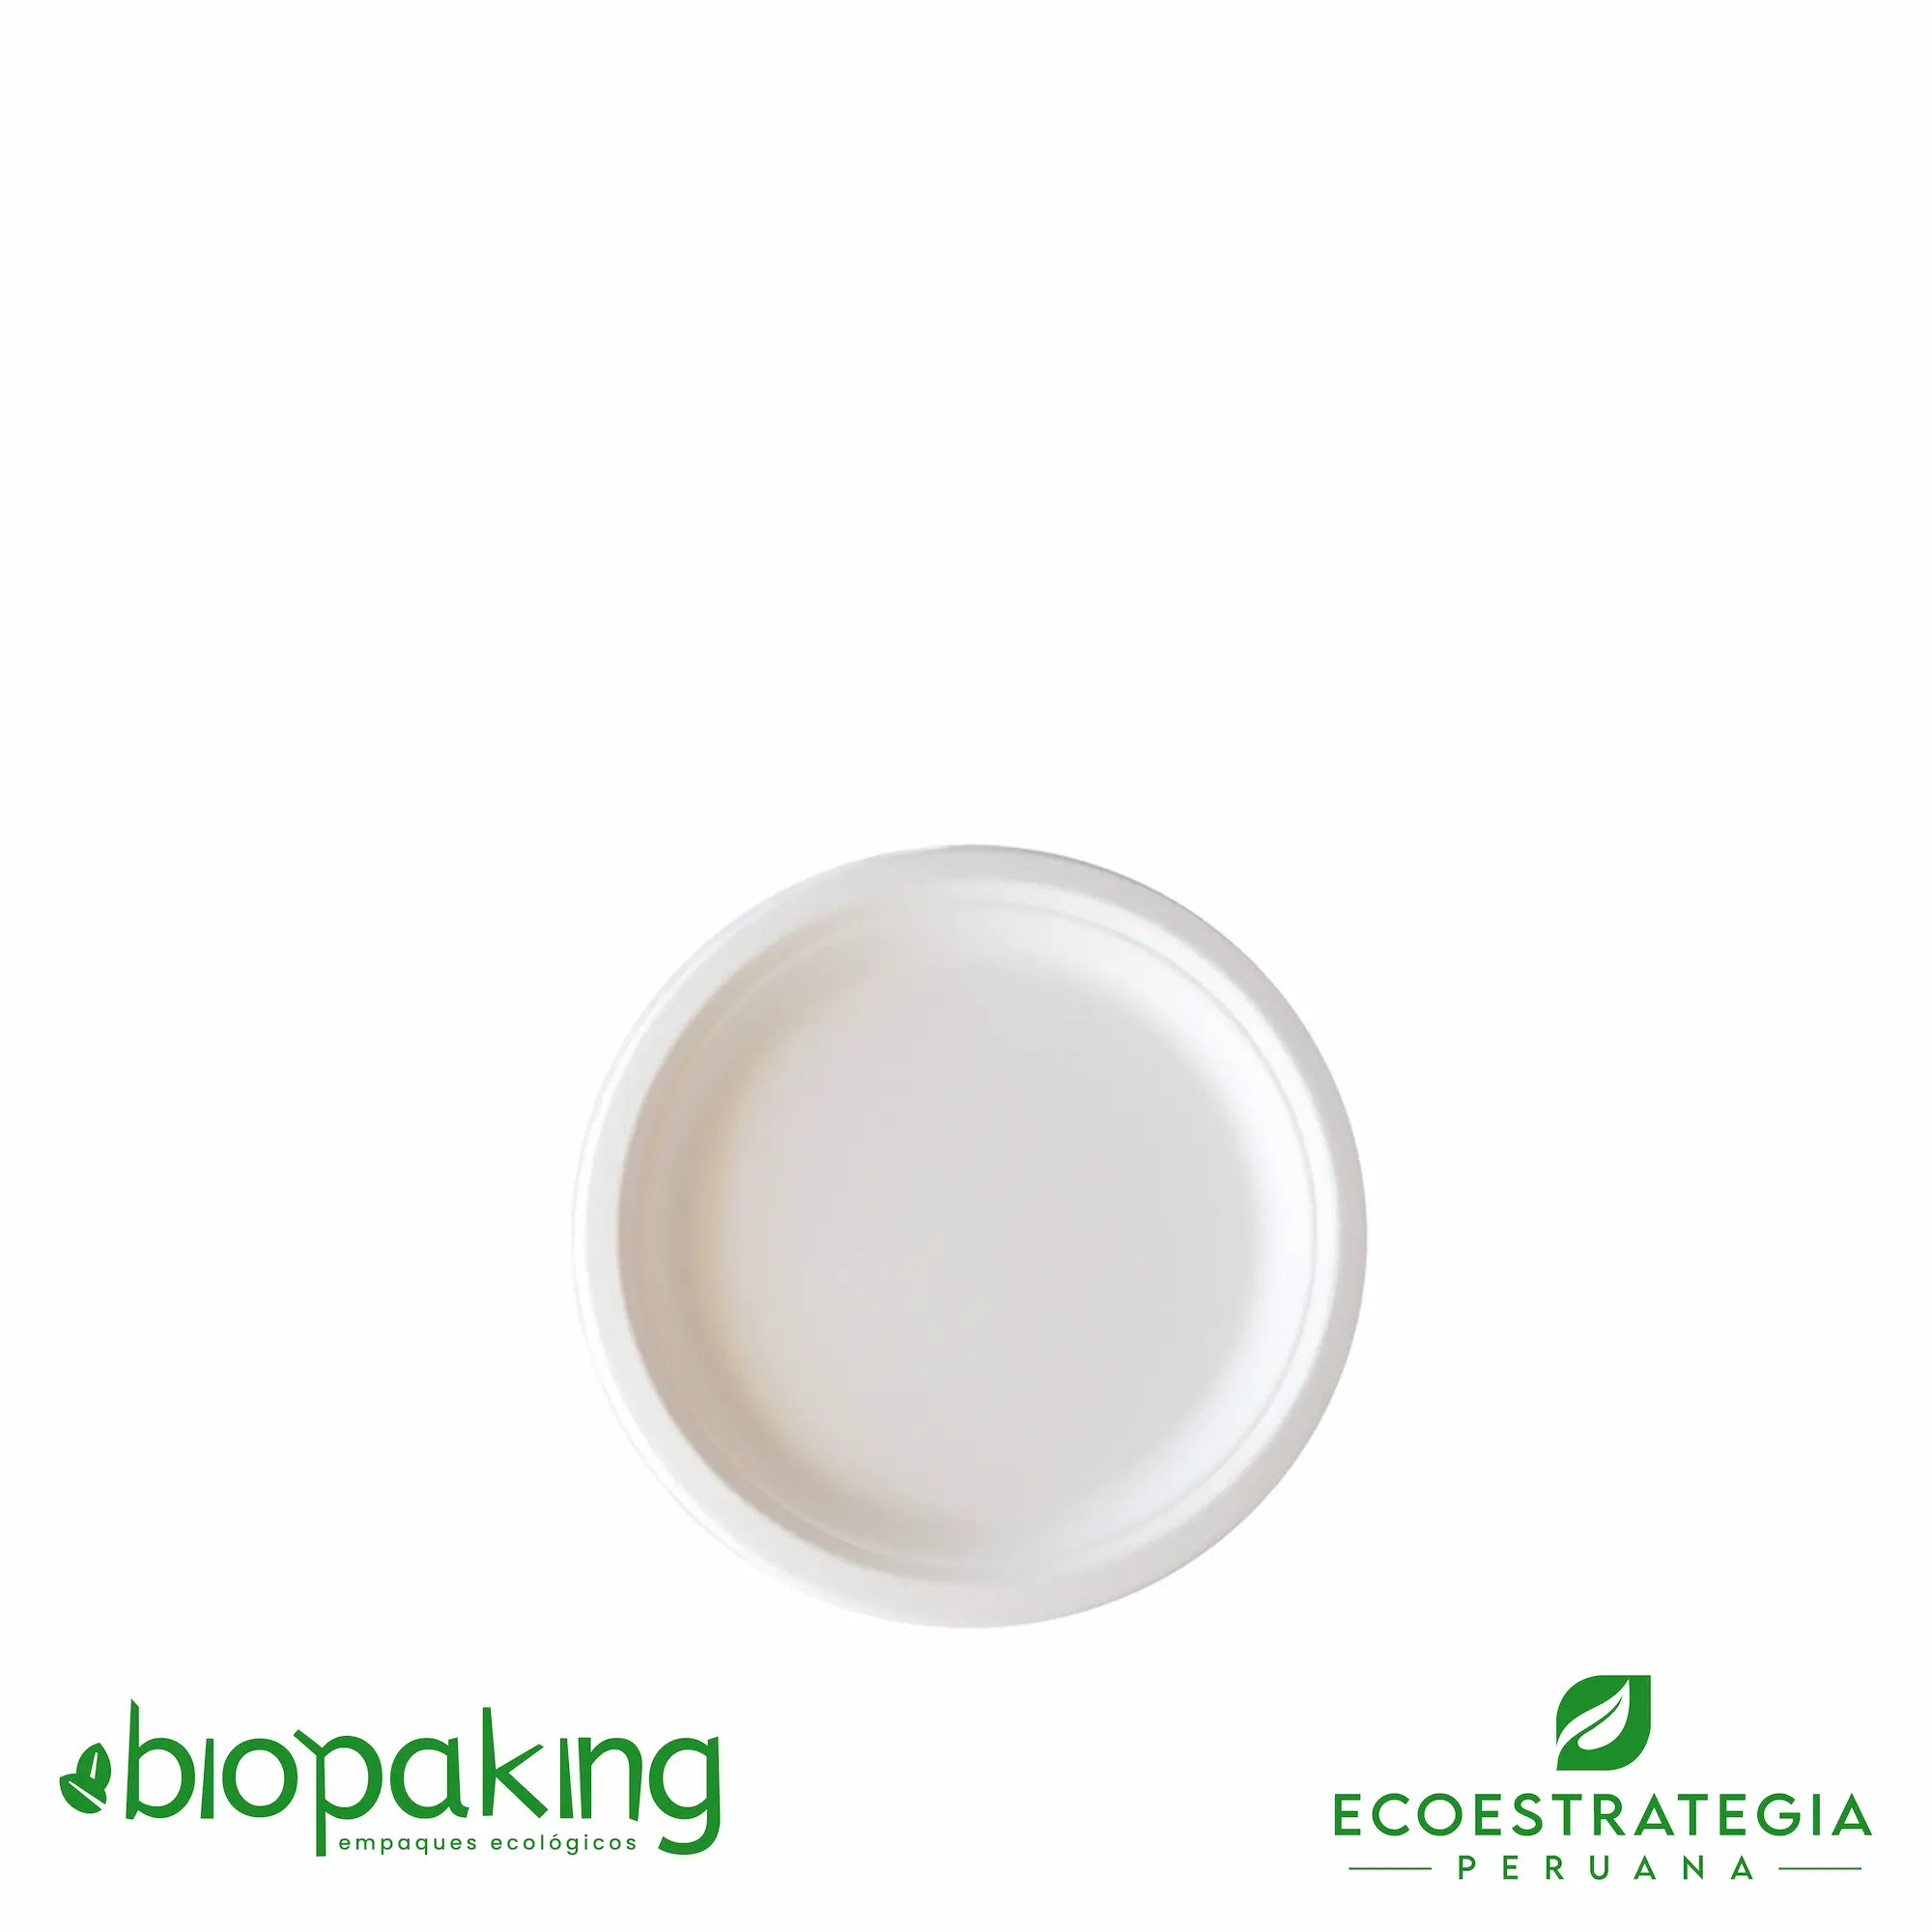 Es un plato biodegradable de 15 cm, fabricado a base de fibra de caña de azúcar. Apto para entradas, postres, tortas, hamburguesa y más. Contamos con stock de platos biodegradables, también los encuentras en las medidas. La mejor calidad en descartables biodegradables.